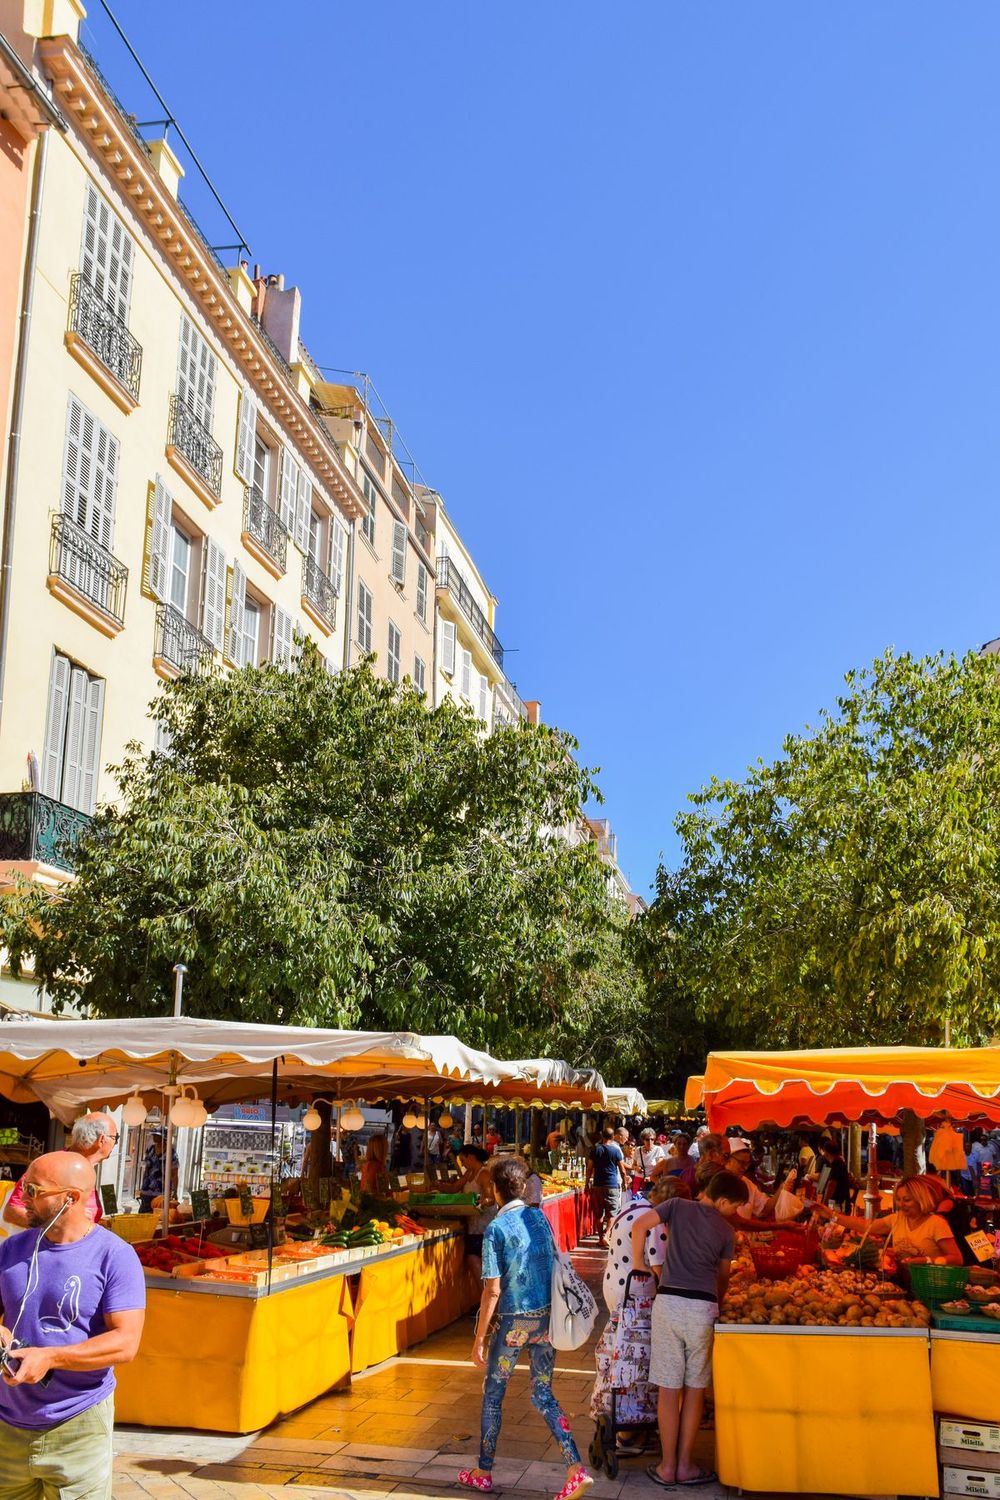 Cours Lafayette Market Toulon, Provence, France